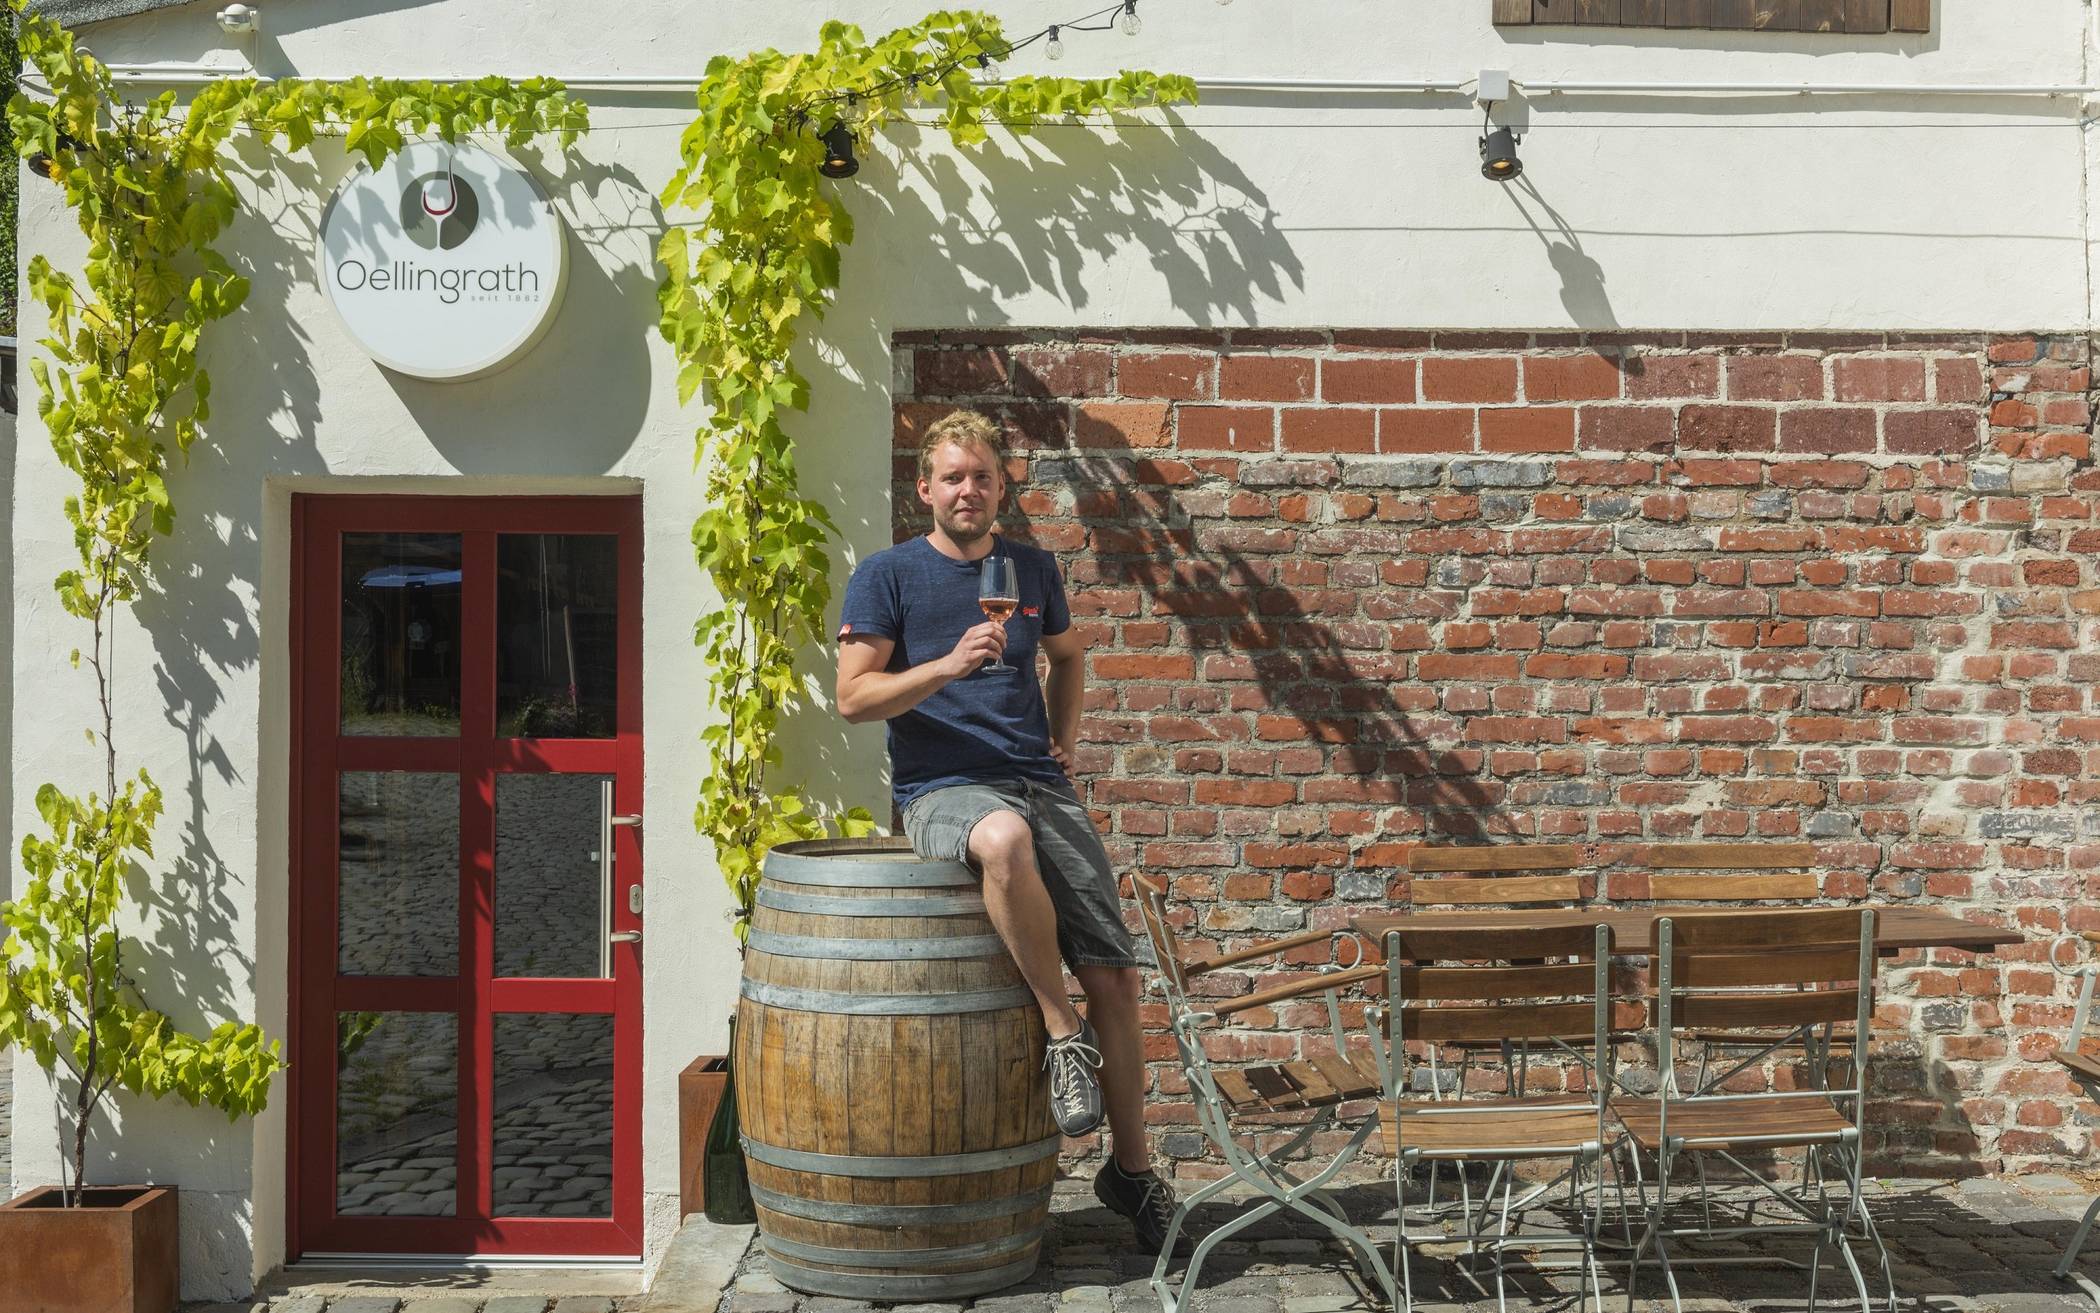  Paul Morhenn möchte einen eigenen Online-Shop für seine Weinhandlung Oellingrath aufbauen 